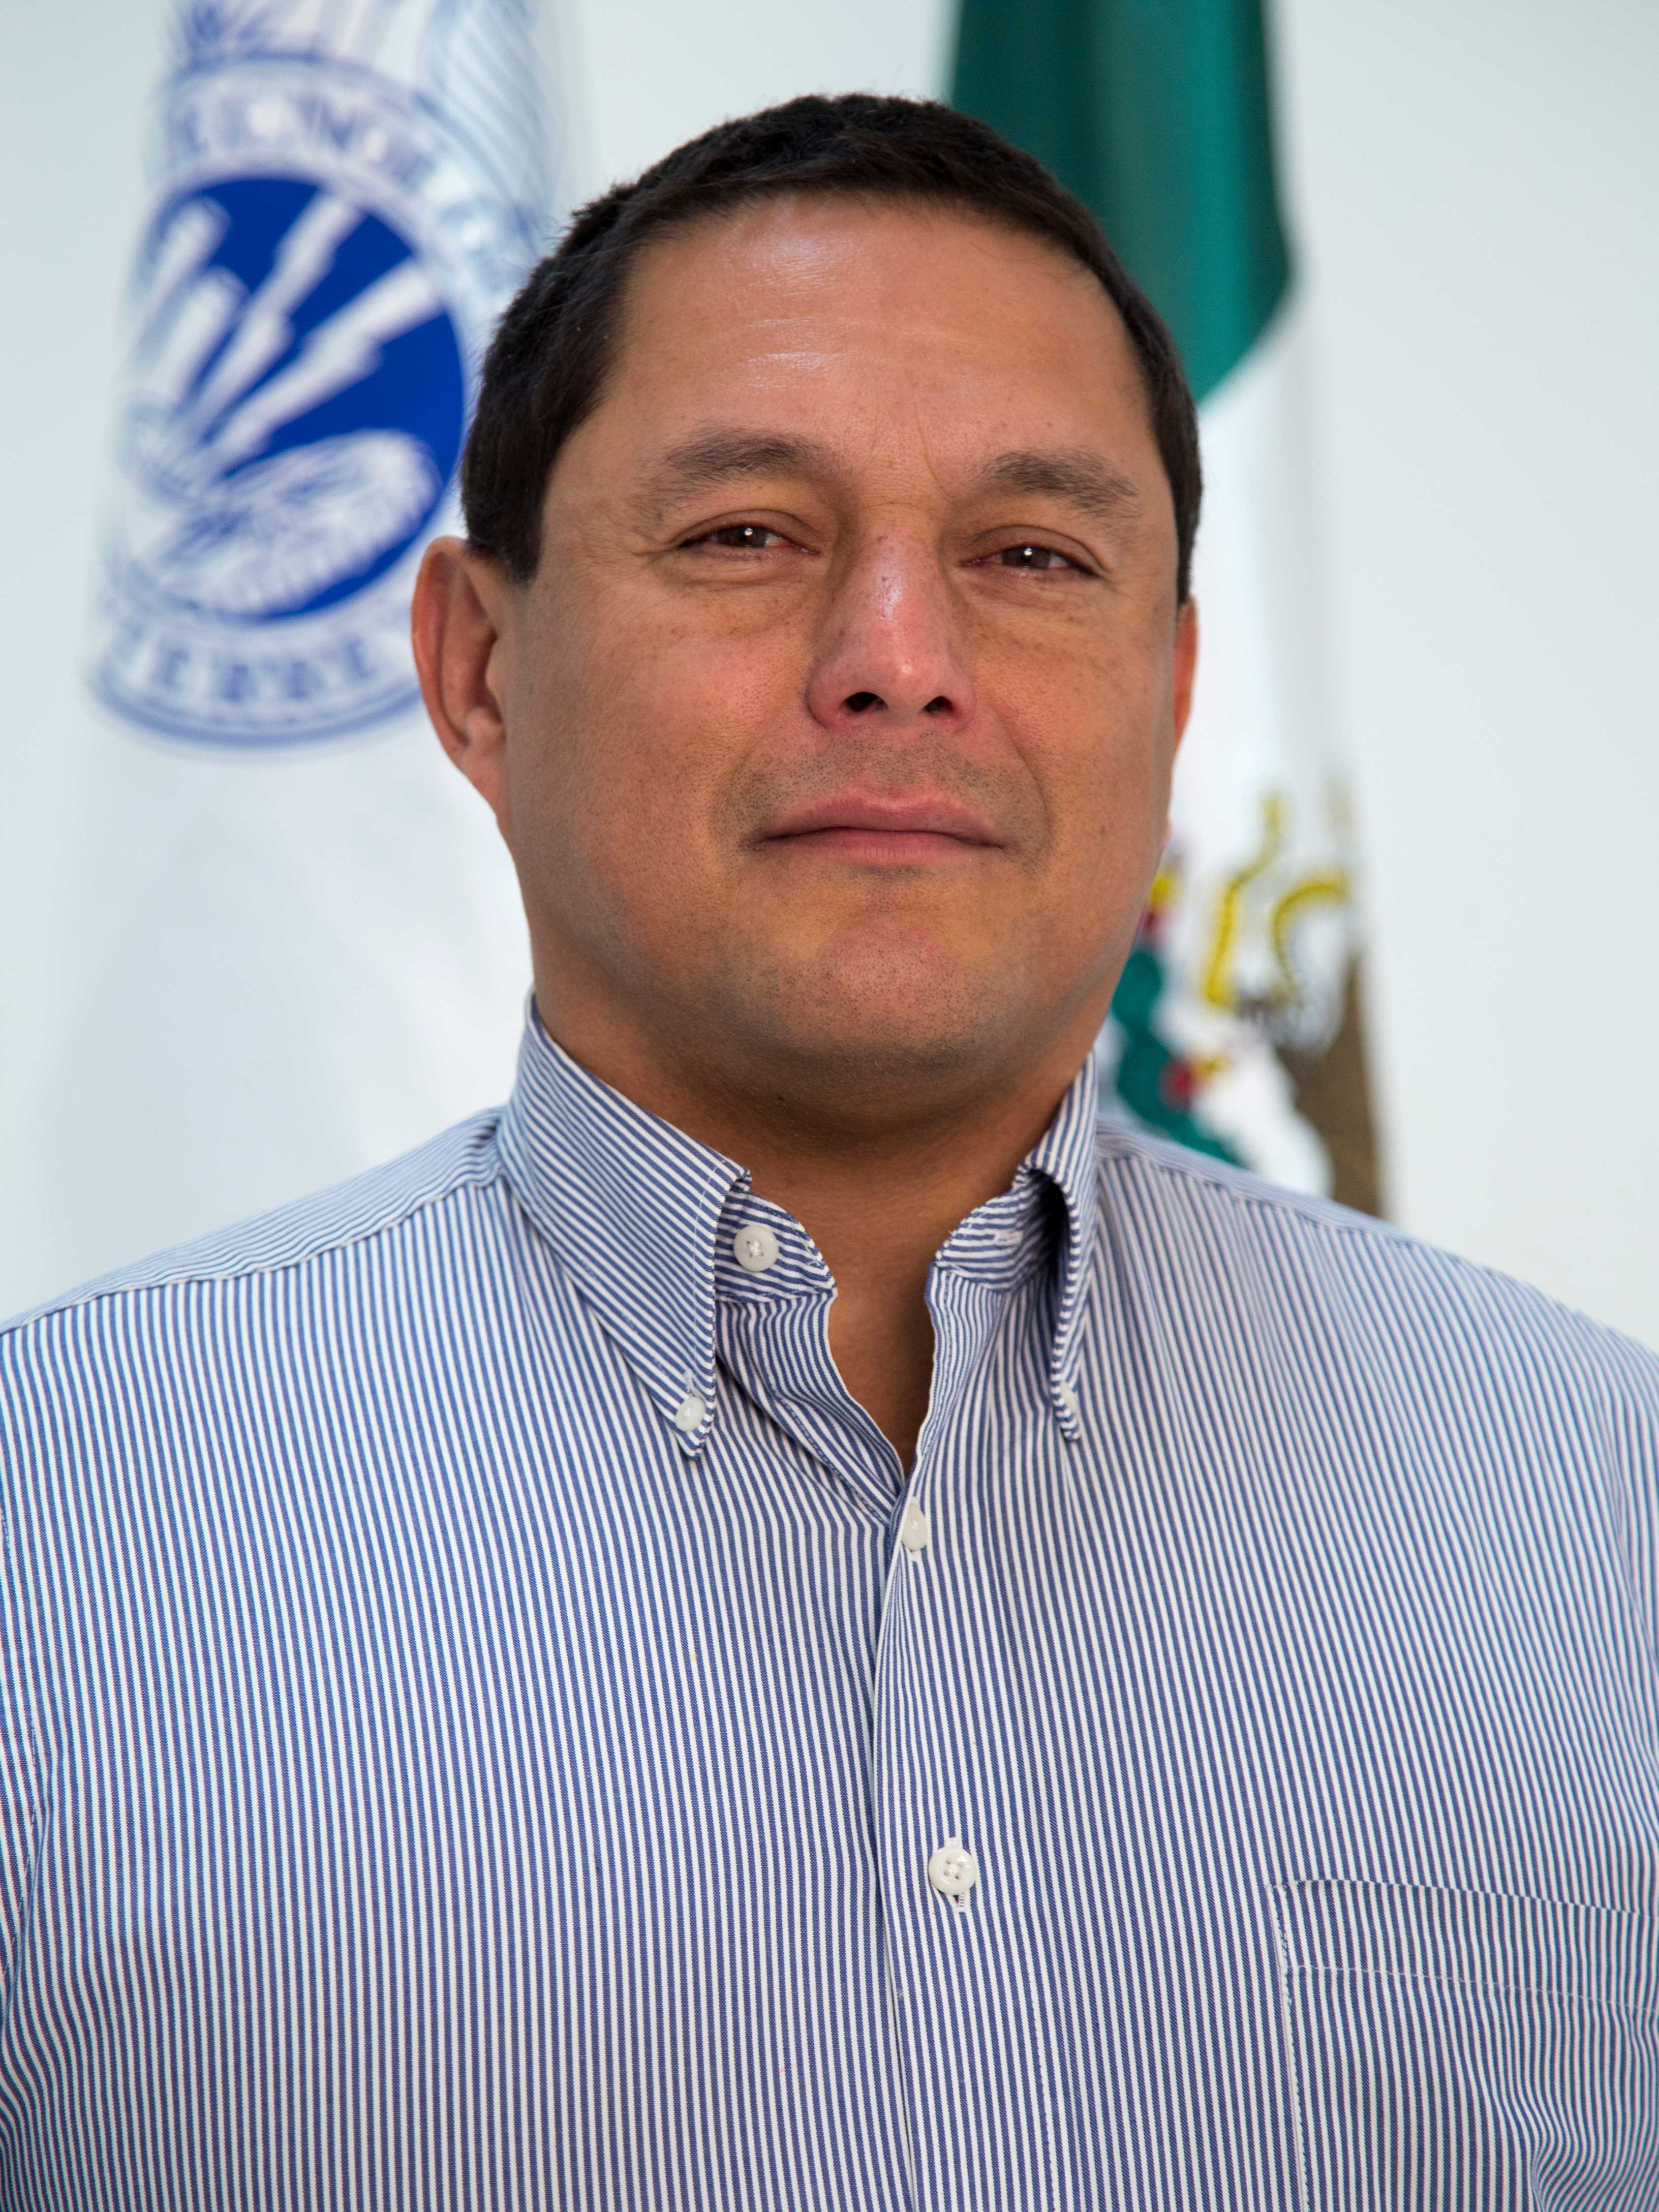 Cesar Martinez